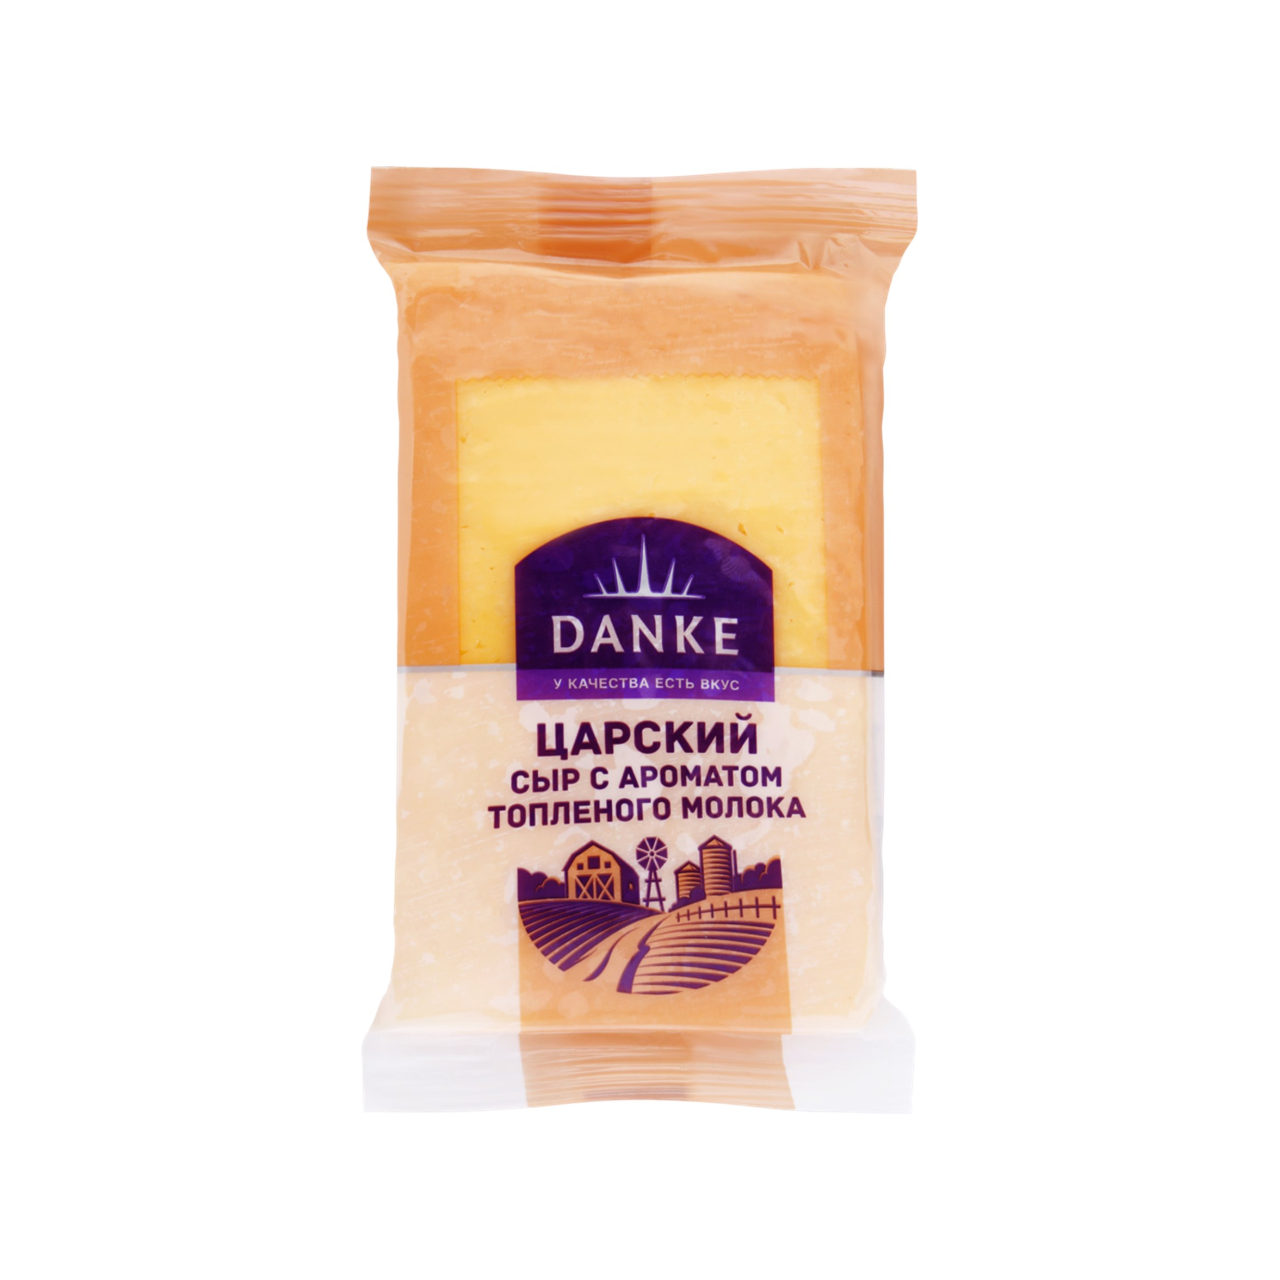 Сыр Данке 45% 180г Царский с ароматом топленого молока